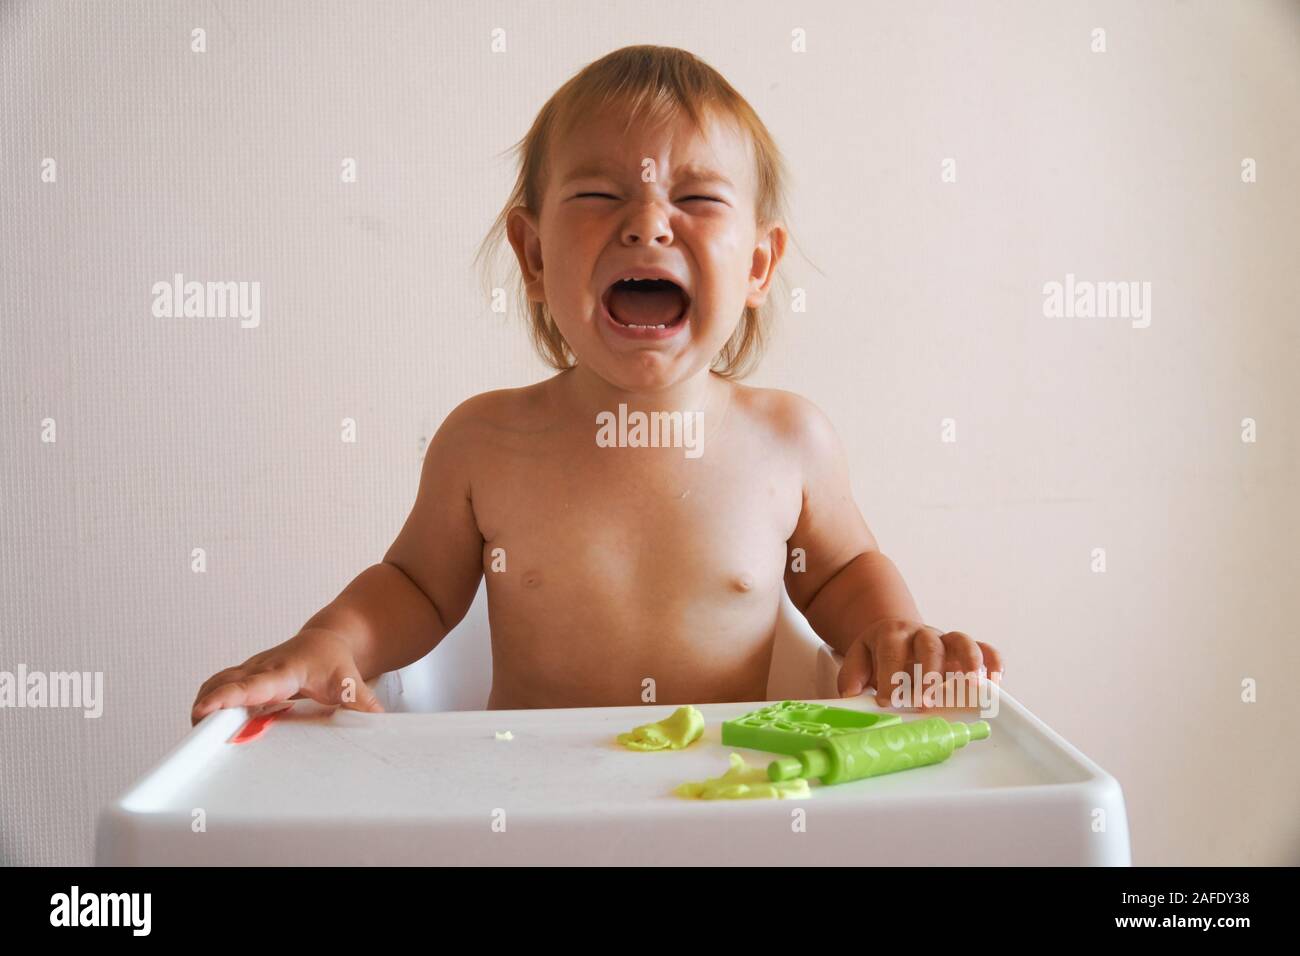 Portrait von weinenden jungen Baby sitzen auf Stuhl Stockfotografie - Alamy